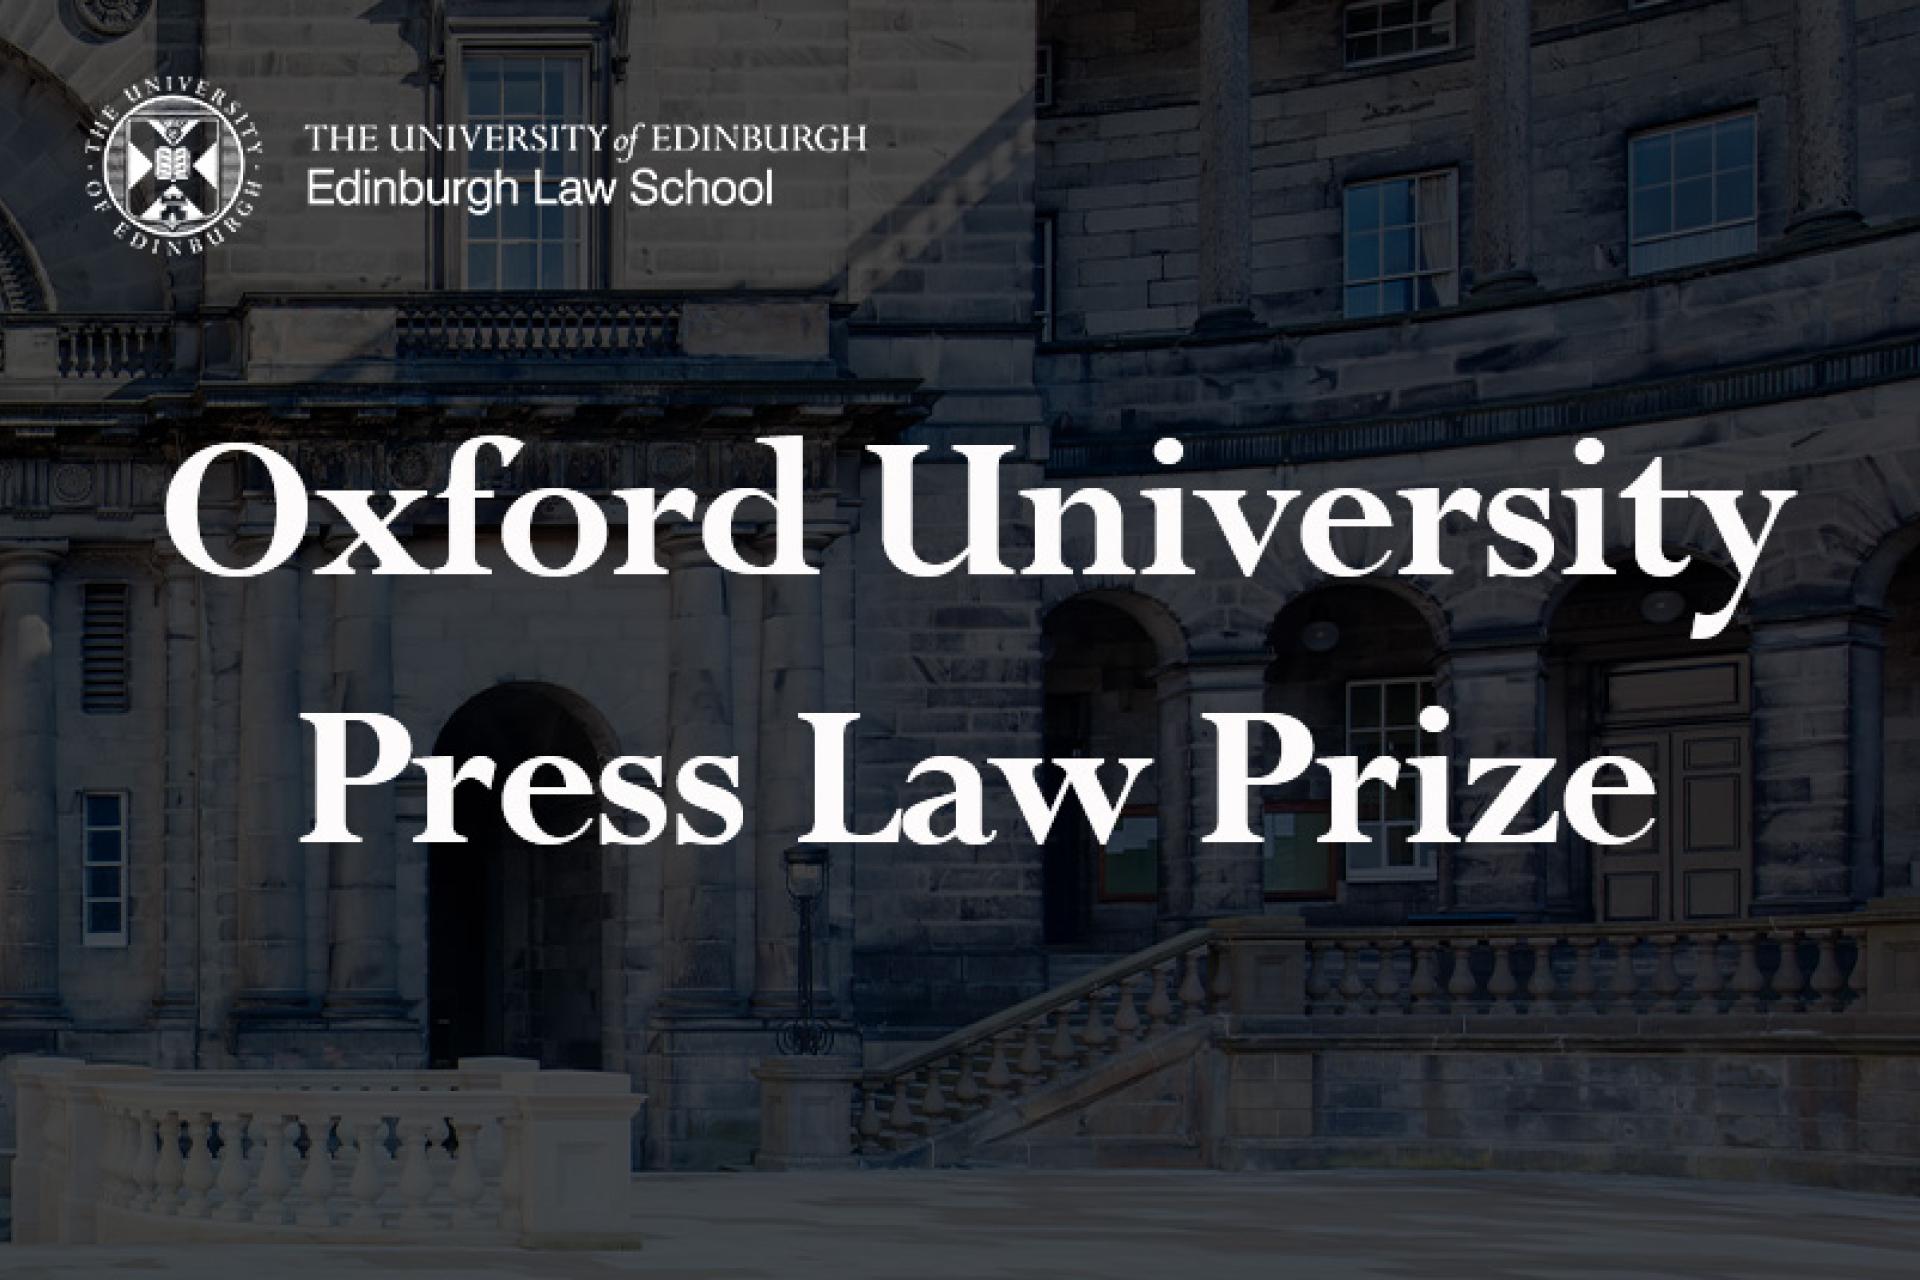 Oxford University Press Law Prize